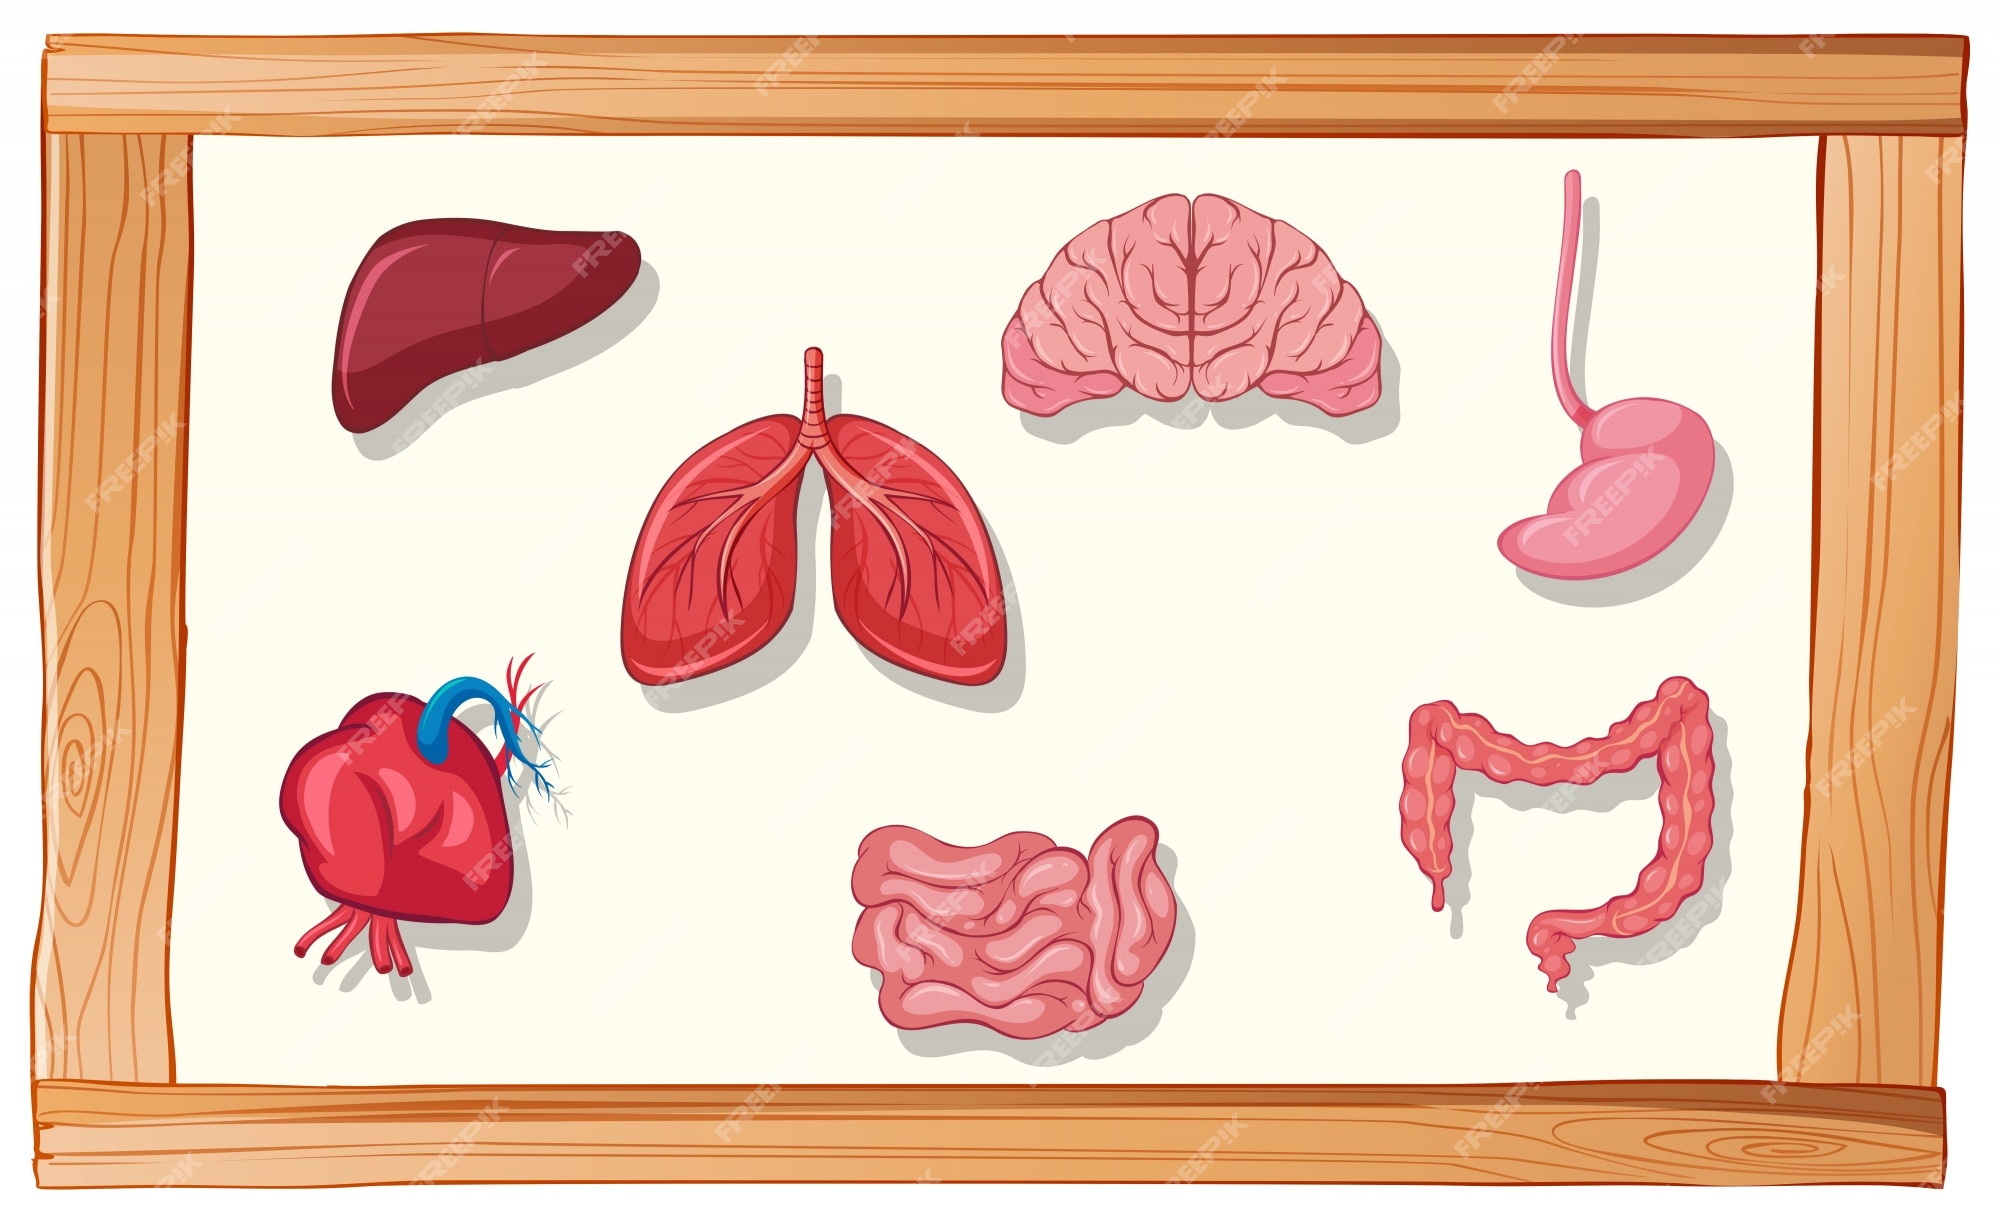 Human Organ Cartoon Images - Free Download on Freepik